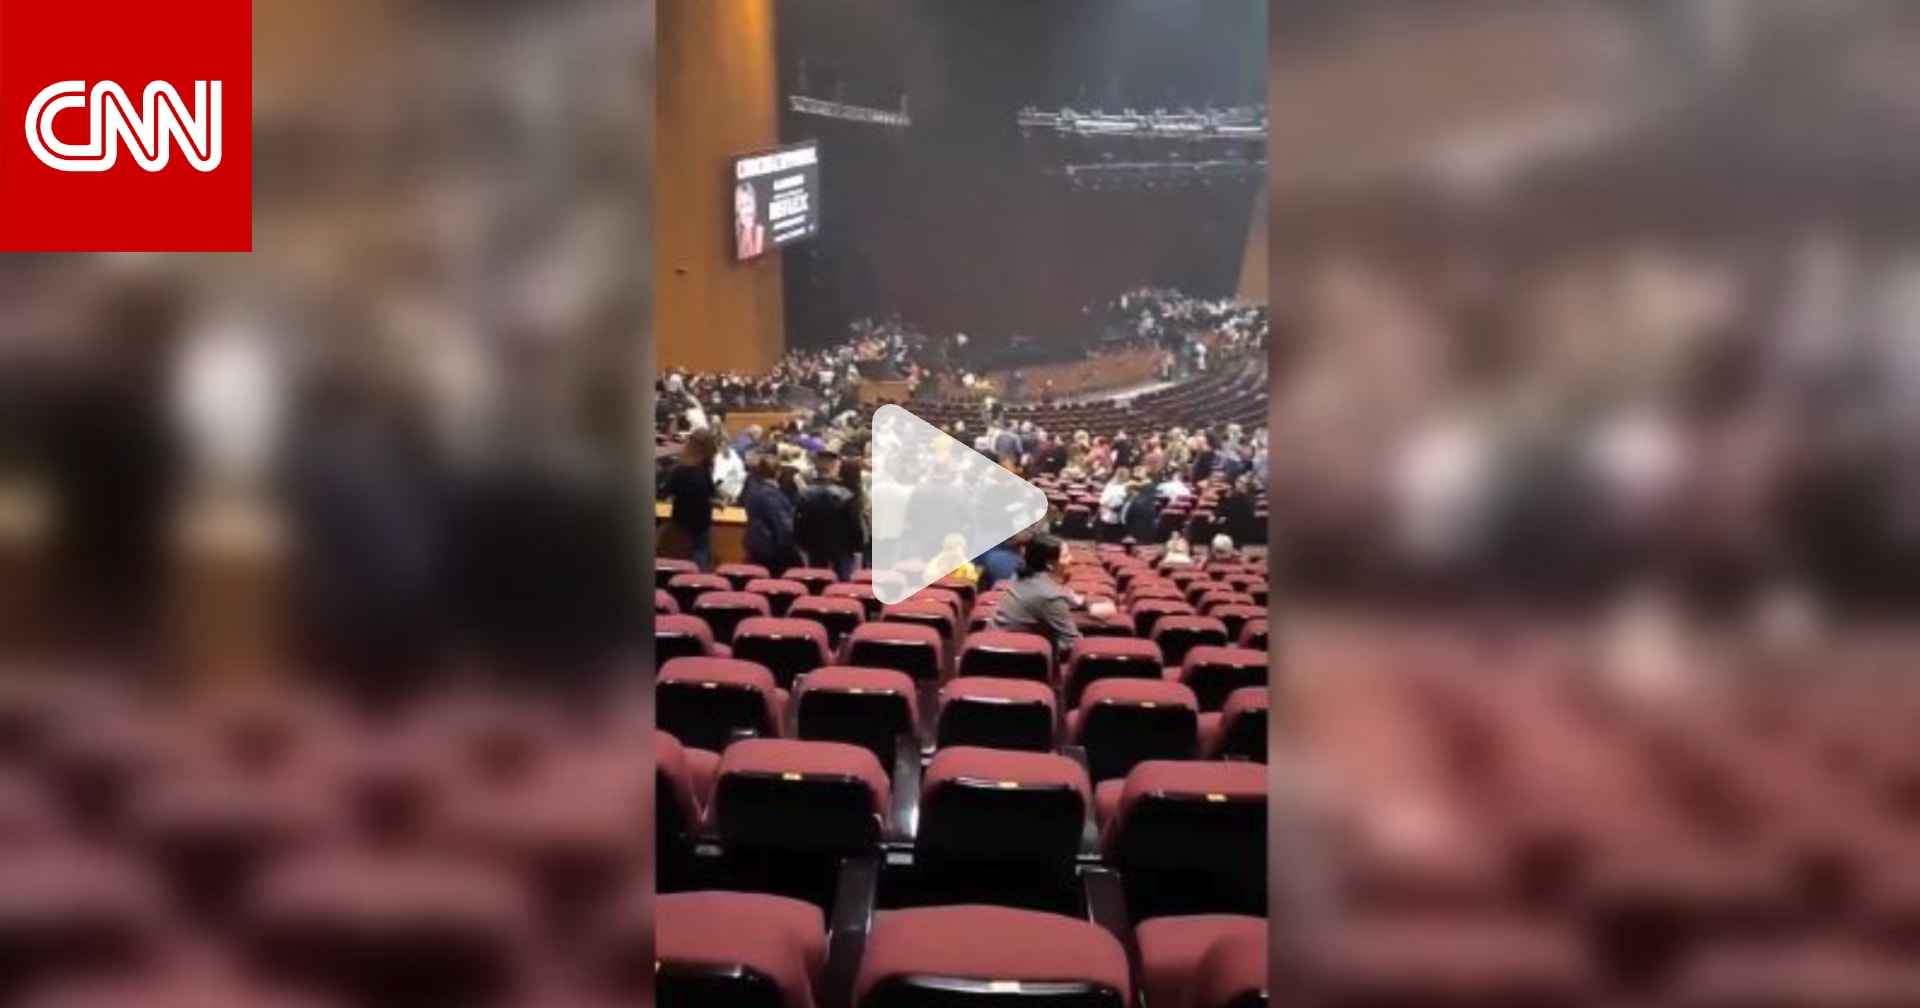 فيديو يظهر لحظات الرعب داخل قاعة للحفلات الموسيقية بالقرب من موسكو